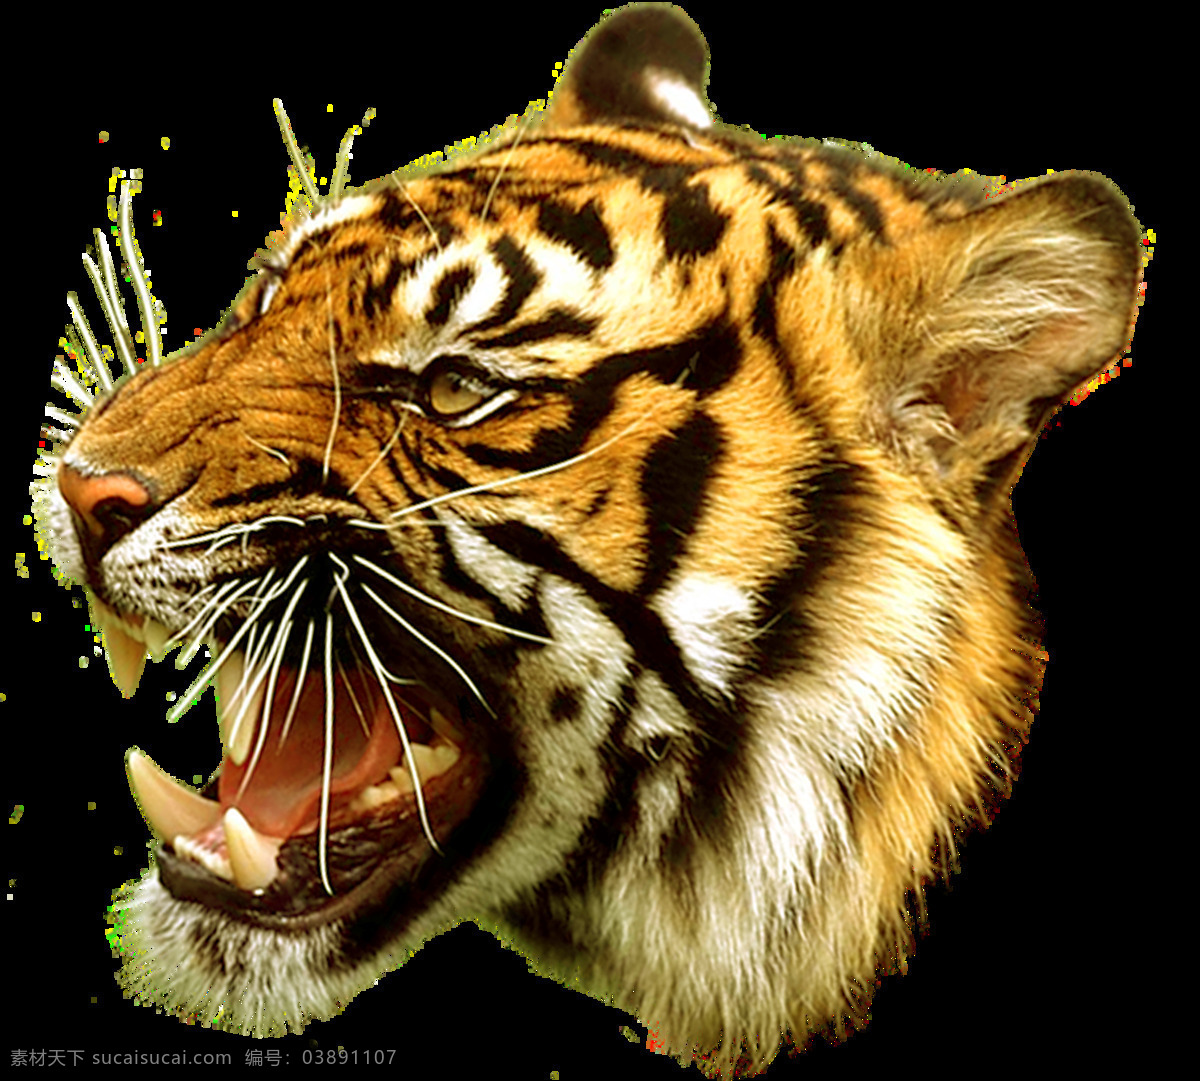 老虎头侧面 老虎 猛兽 老虎头png 生物世界 野生动物